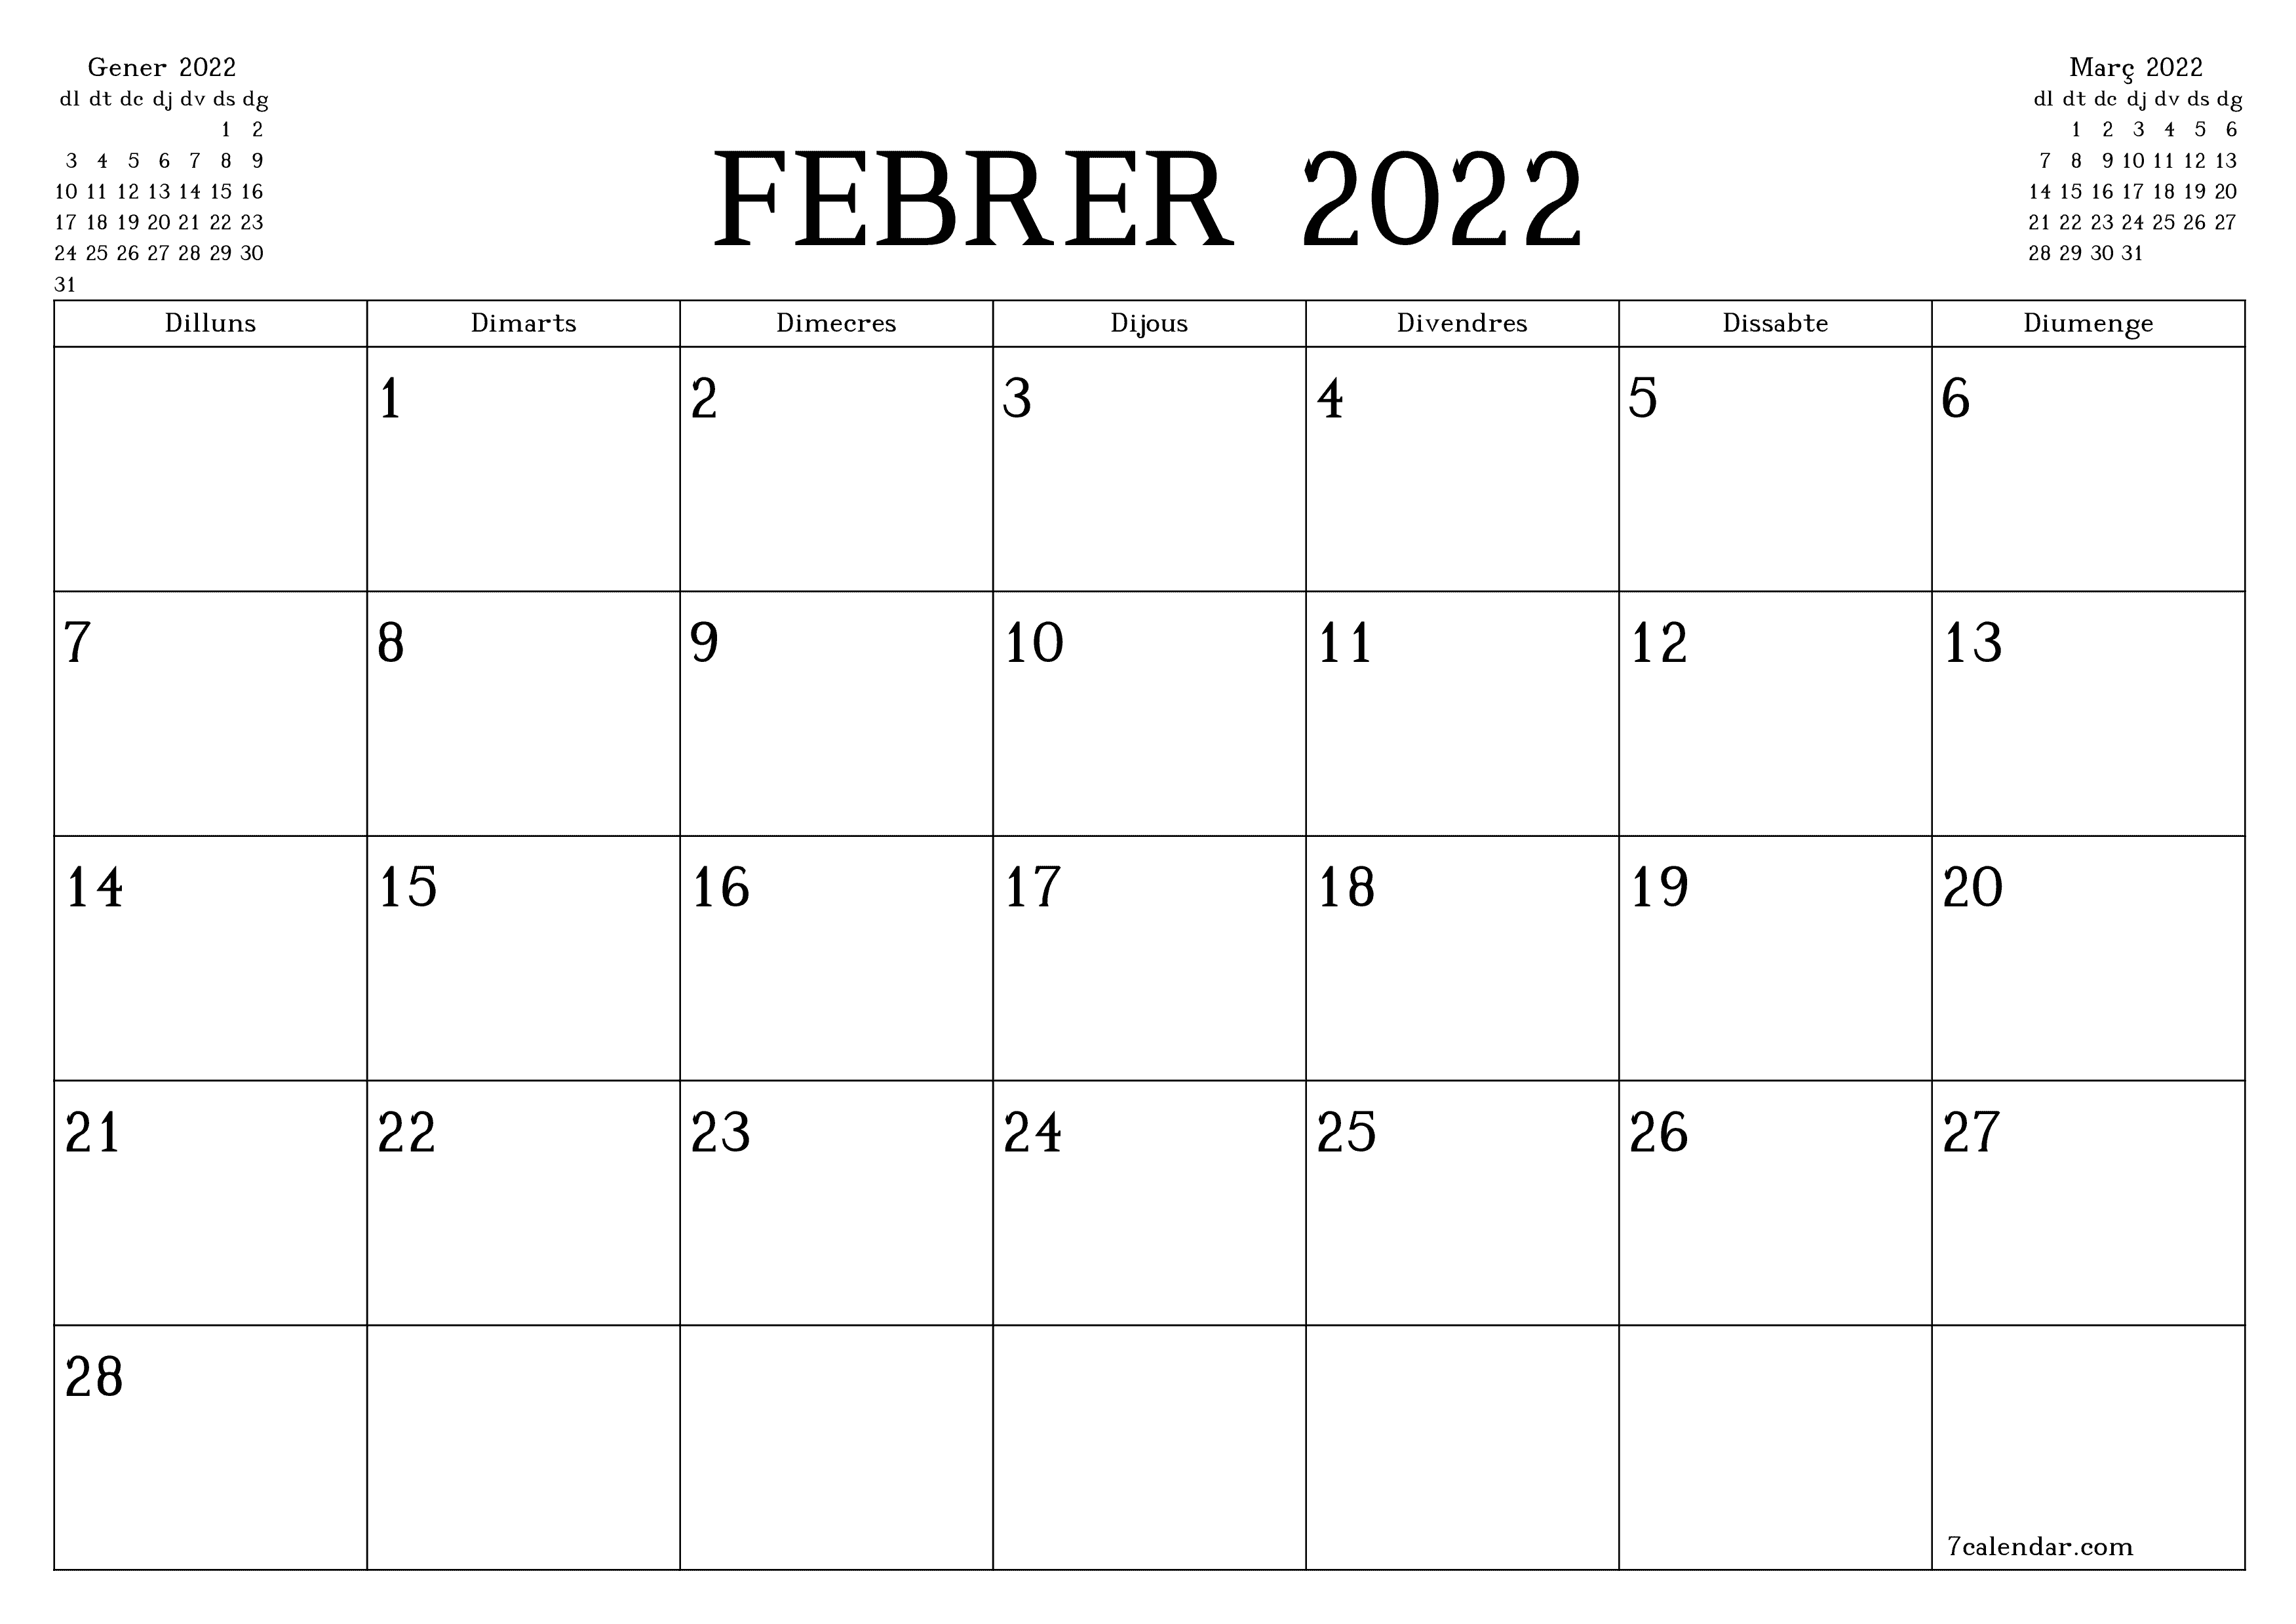 La màgia del 22 de febrer del 2022: un dia (gairebé) irrepetible